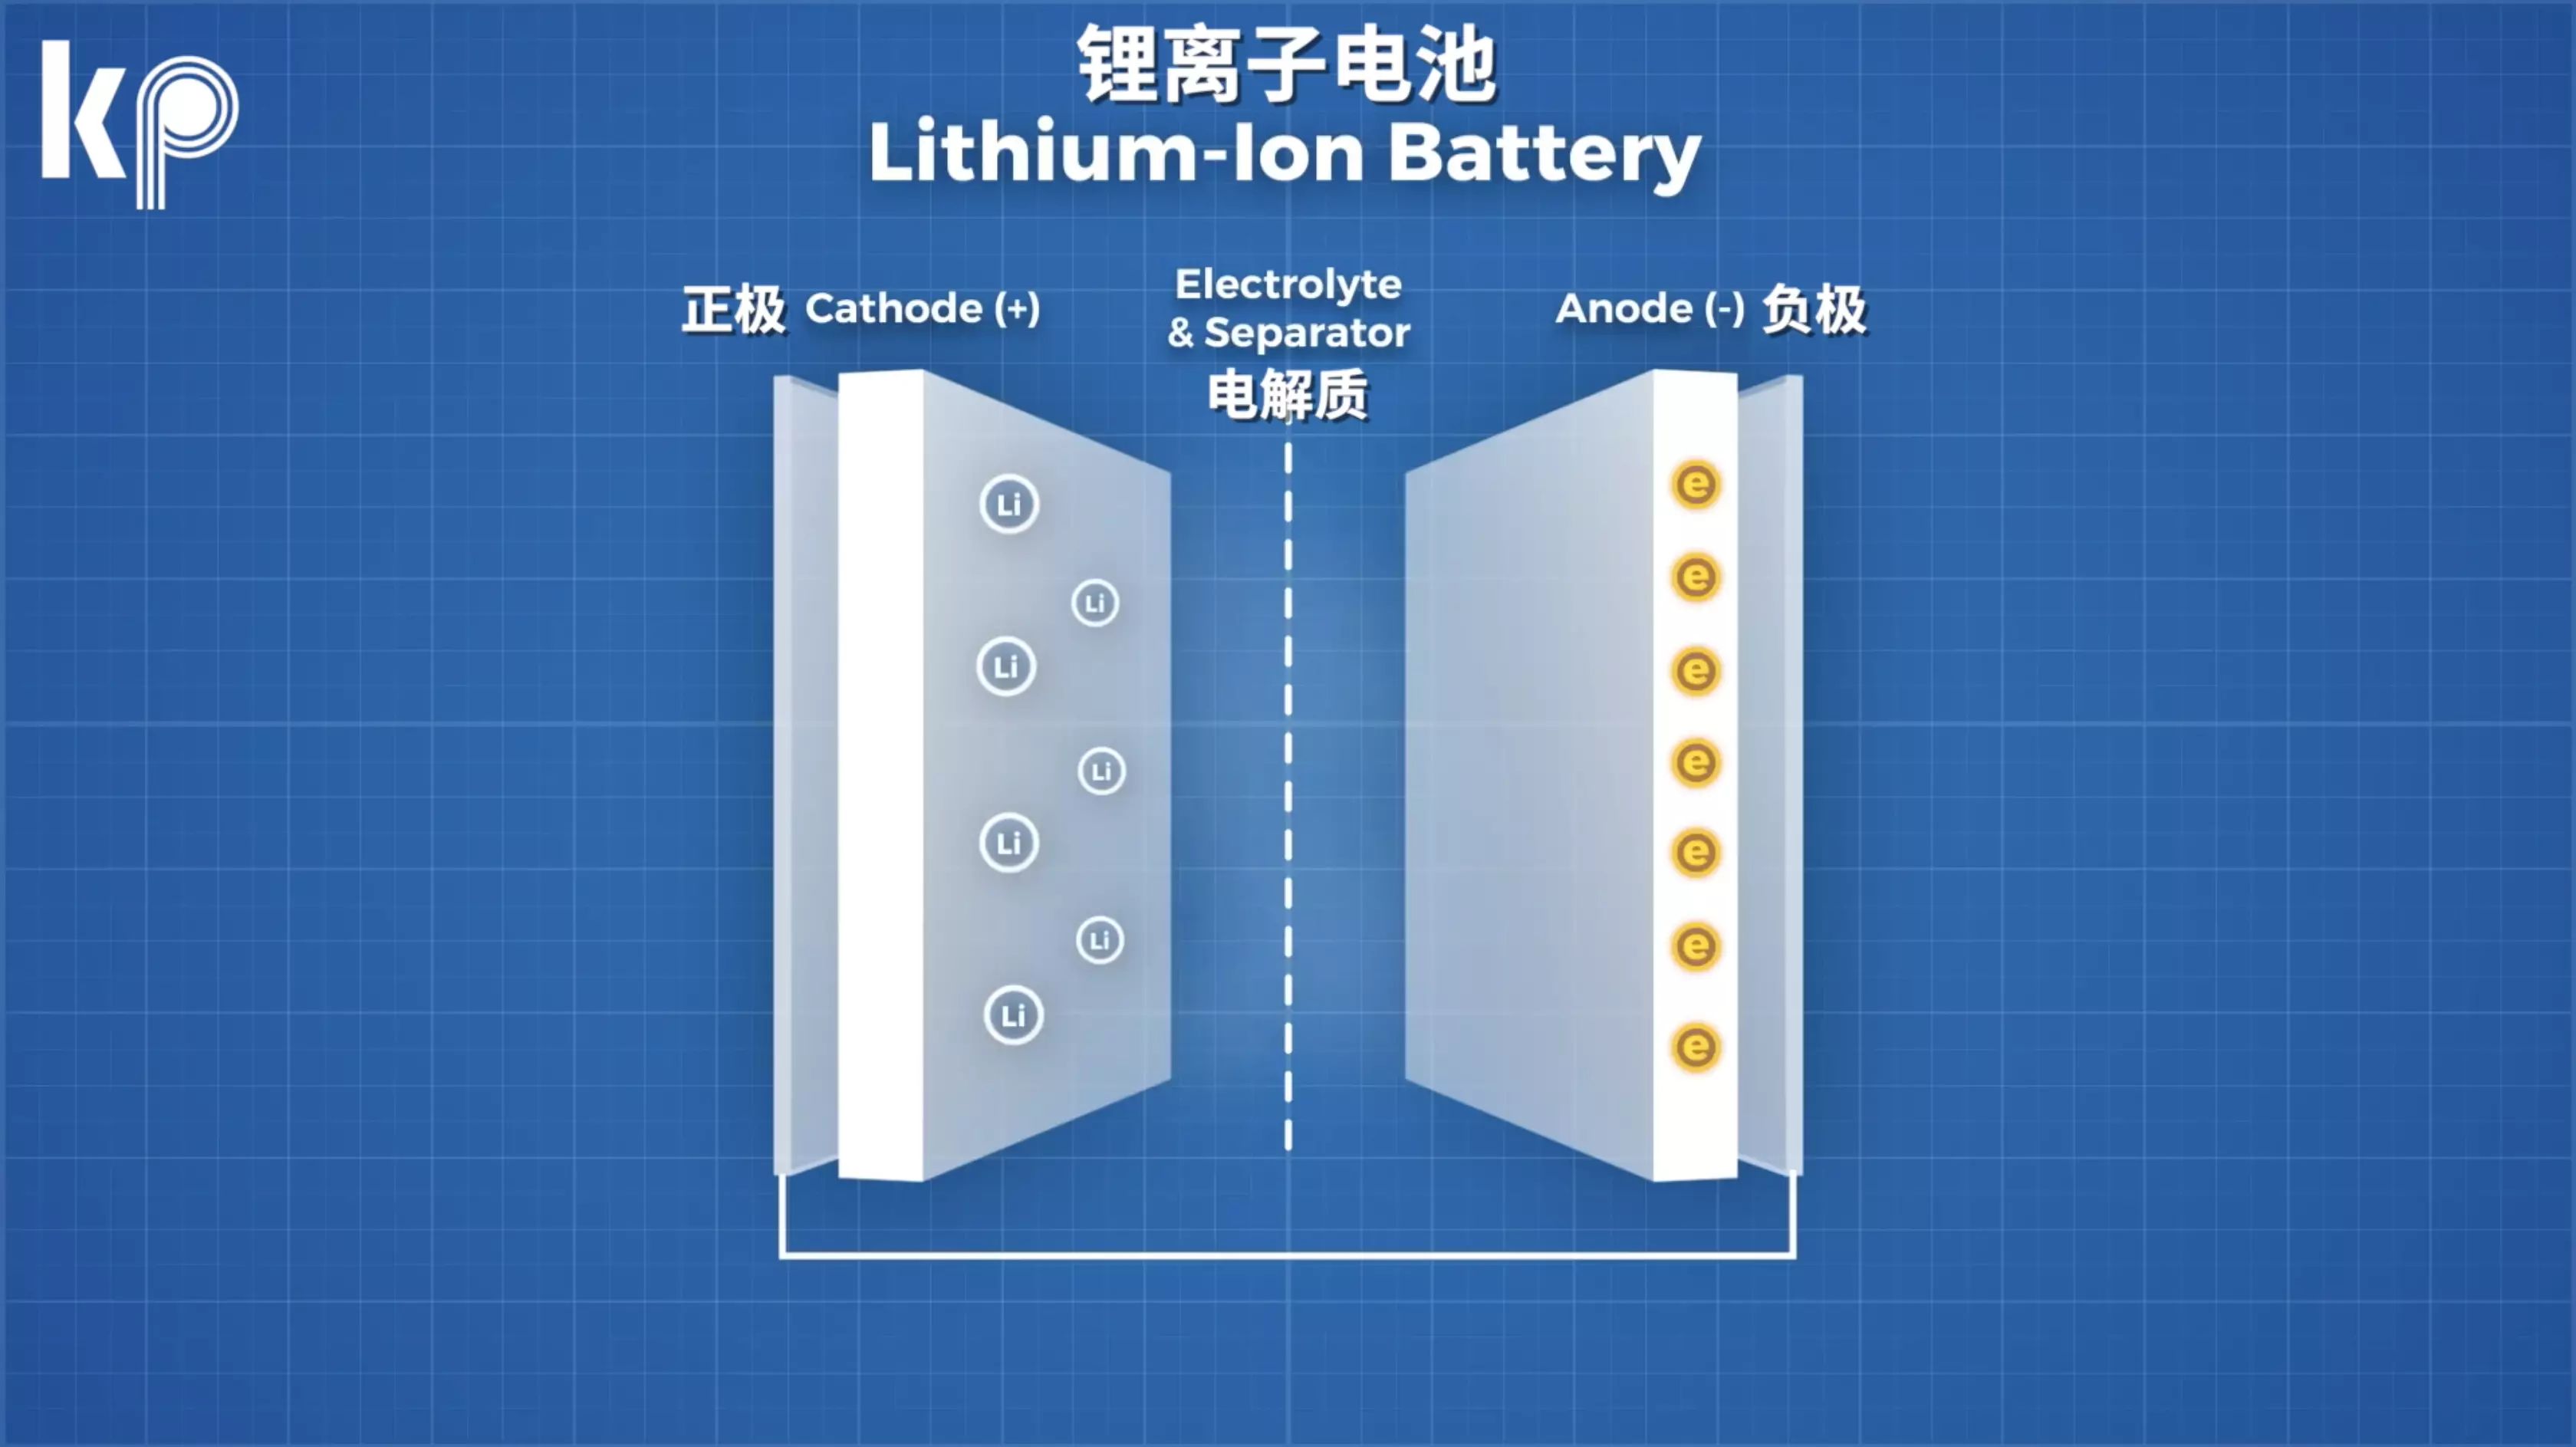 ઔદ્યોગિક વાહનોમાં લિથિયમ બેટરી